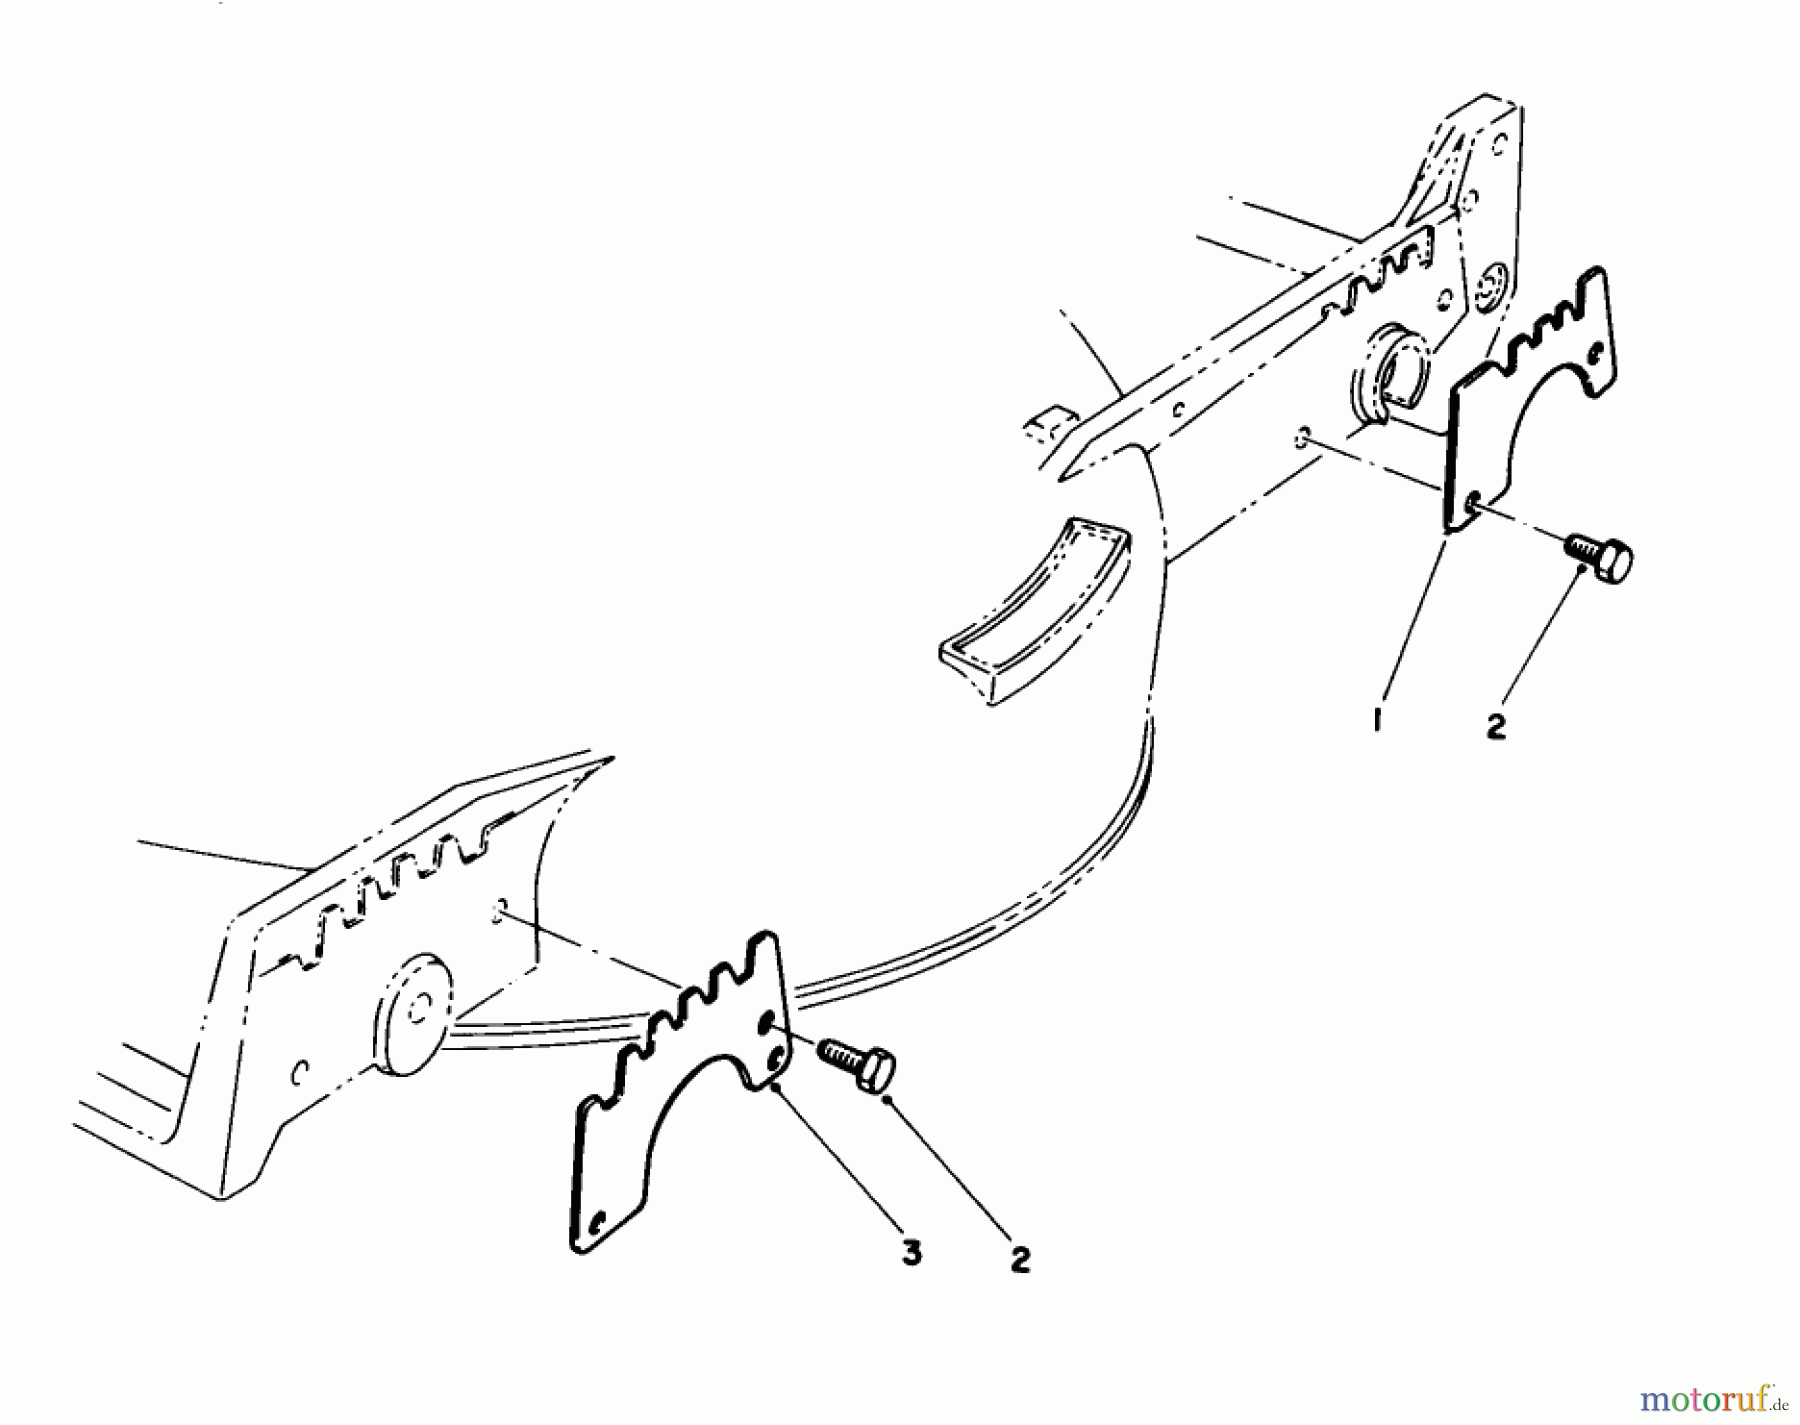  Toro Neu Mowers, Walk-Behind Seite 1 20325 - Toro Lawnmower, 1992 (2000001-2999999) WEAR PLATE MODEL NO. 49-4080 (OPTIONAL)